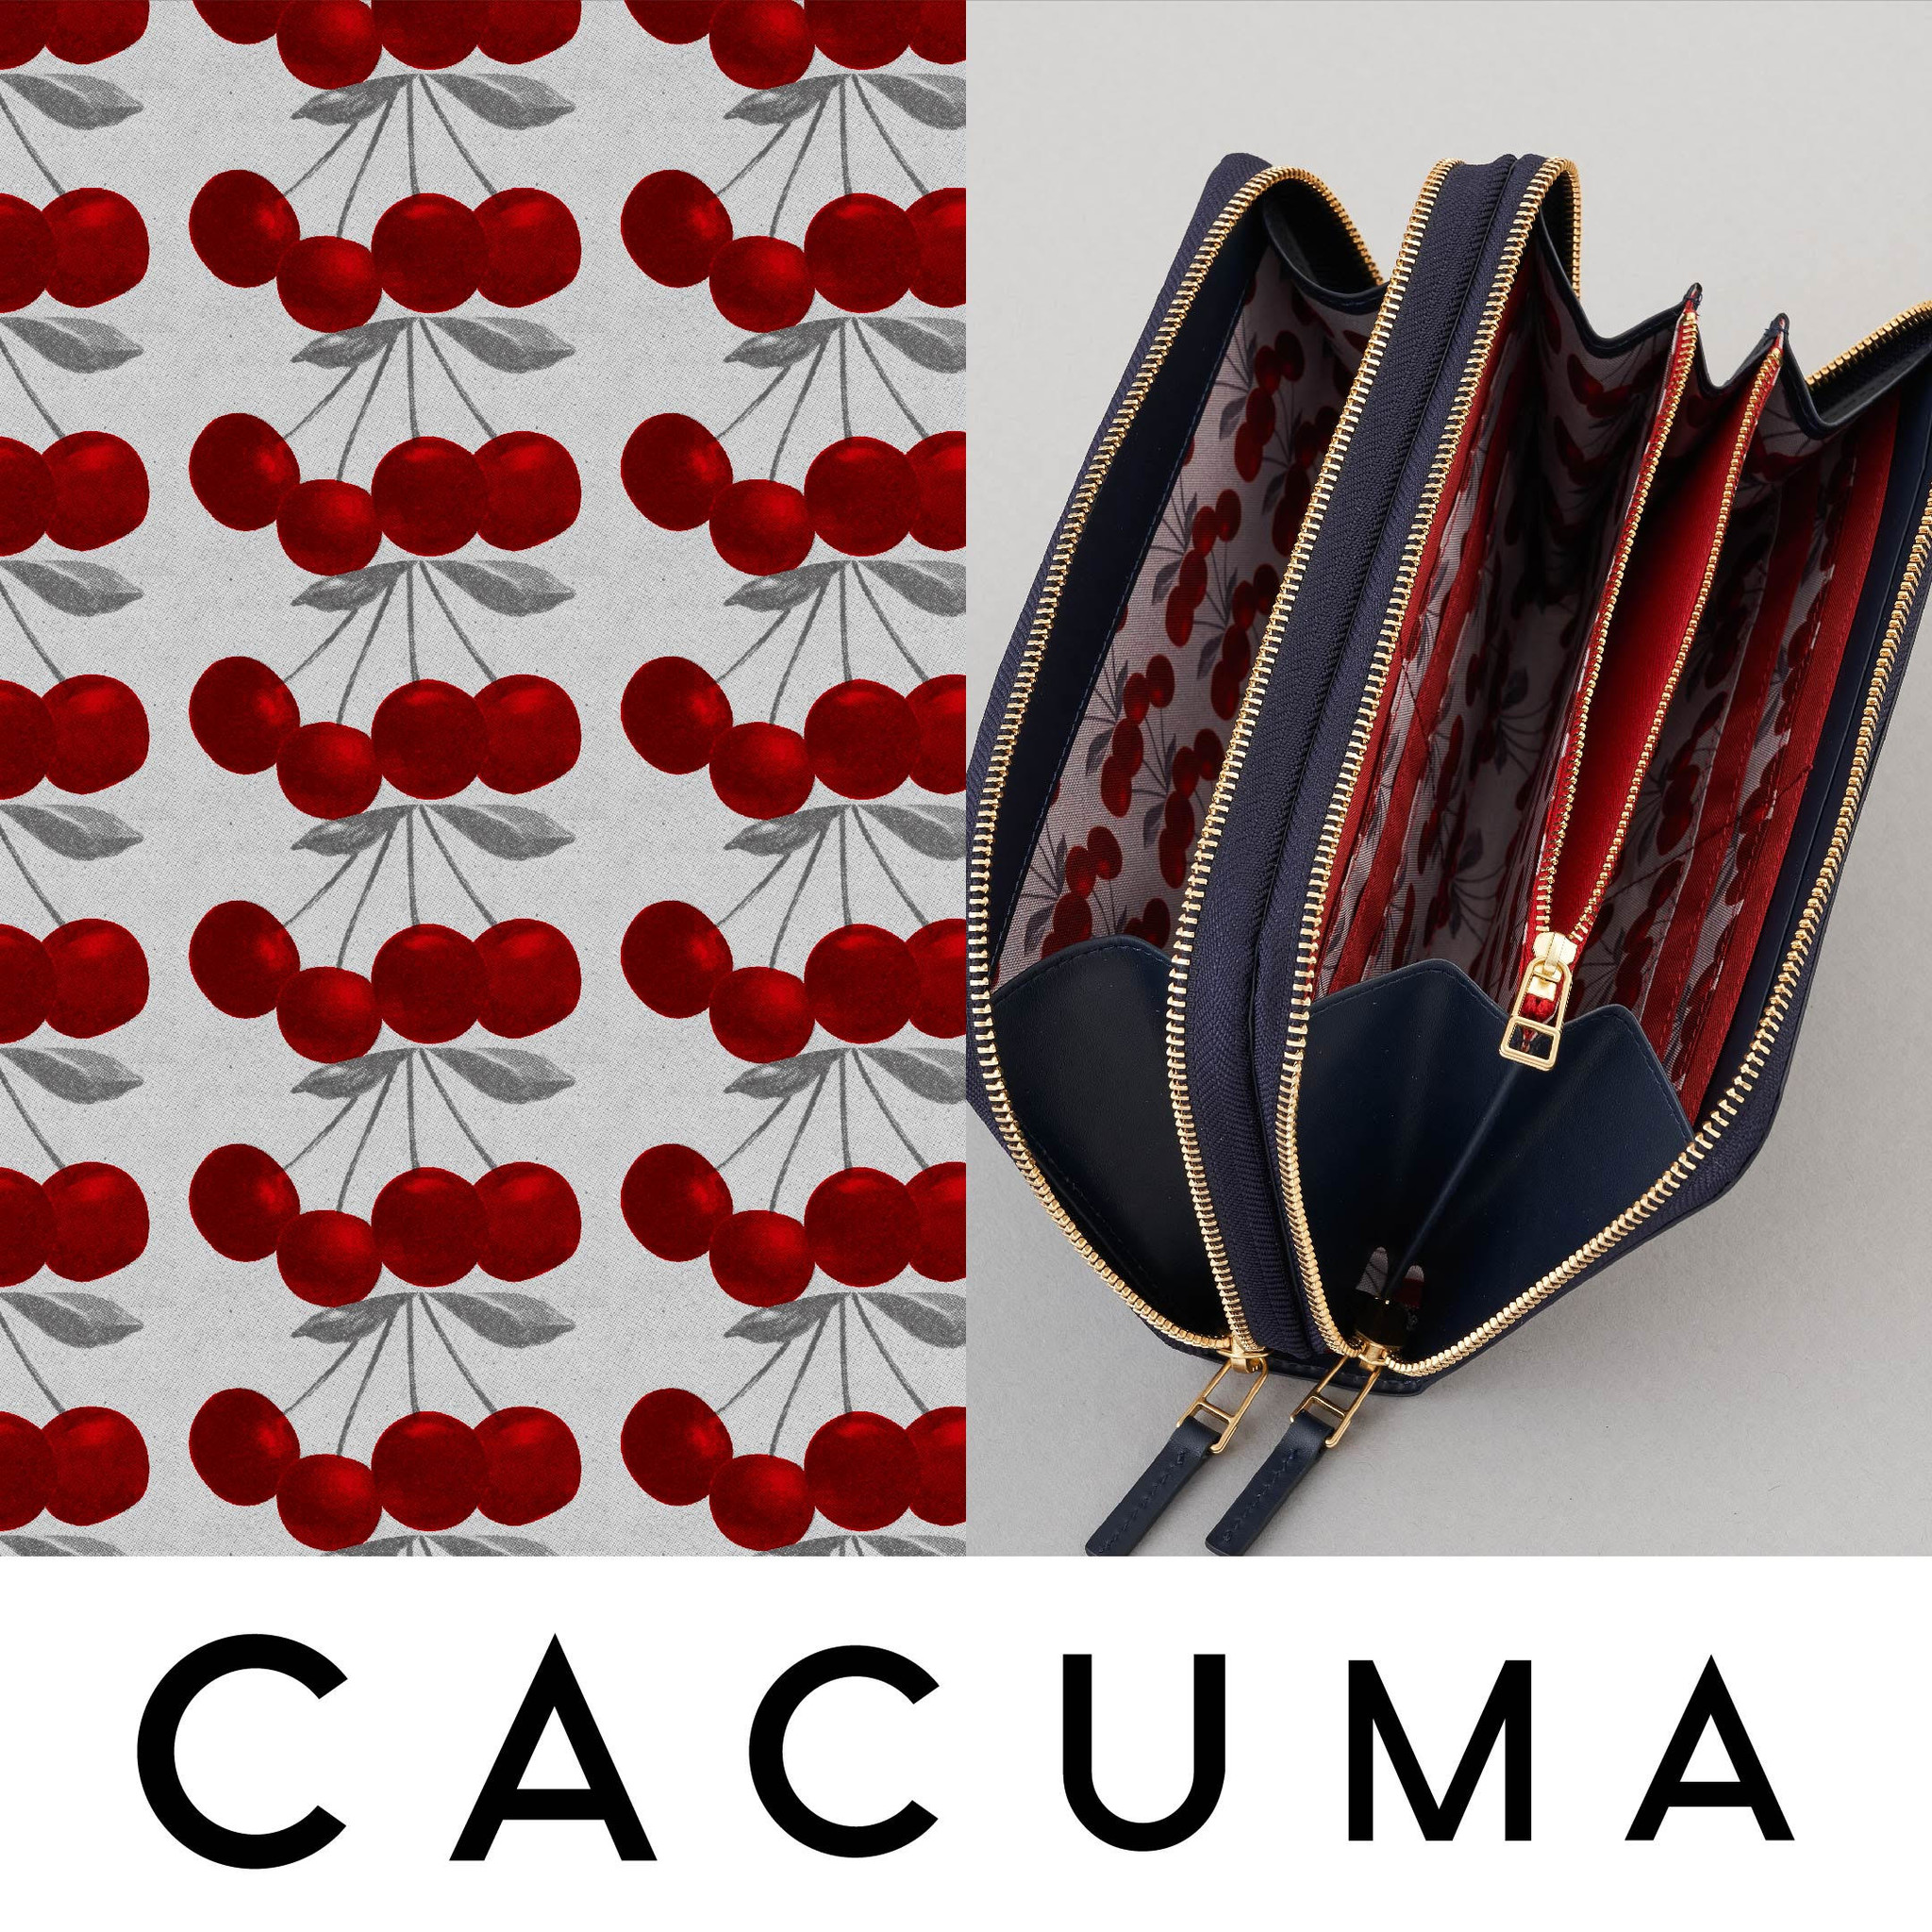 渋谷PARCO「ほぼ日カルチャん」限定 CACUMAのチェリー柄バッグを発売し